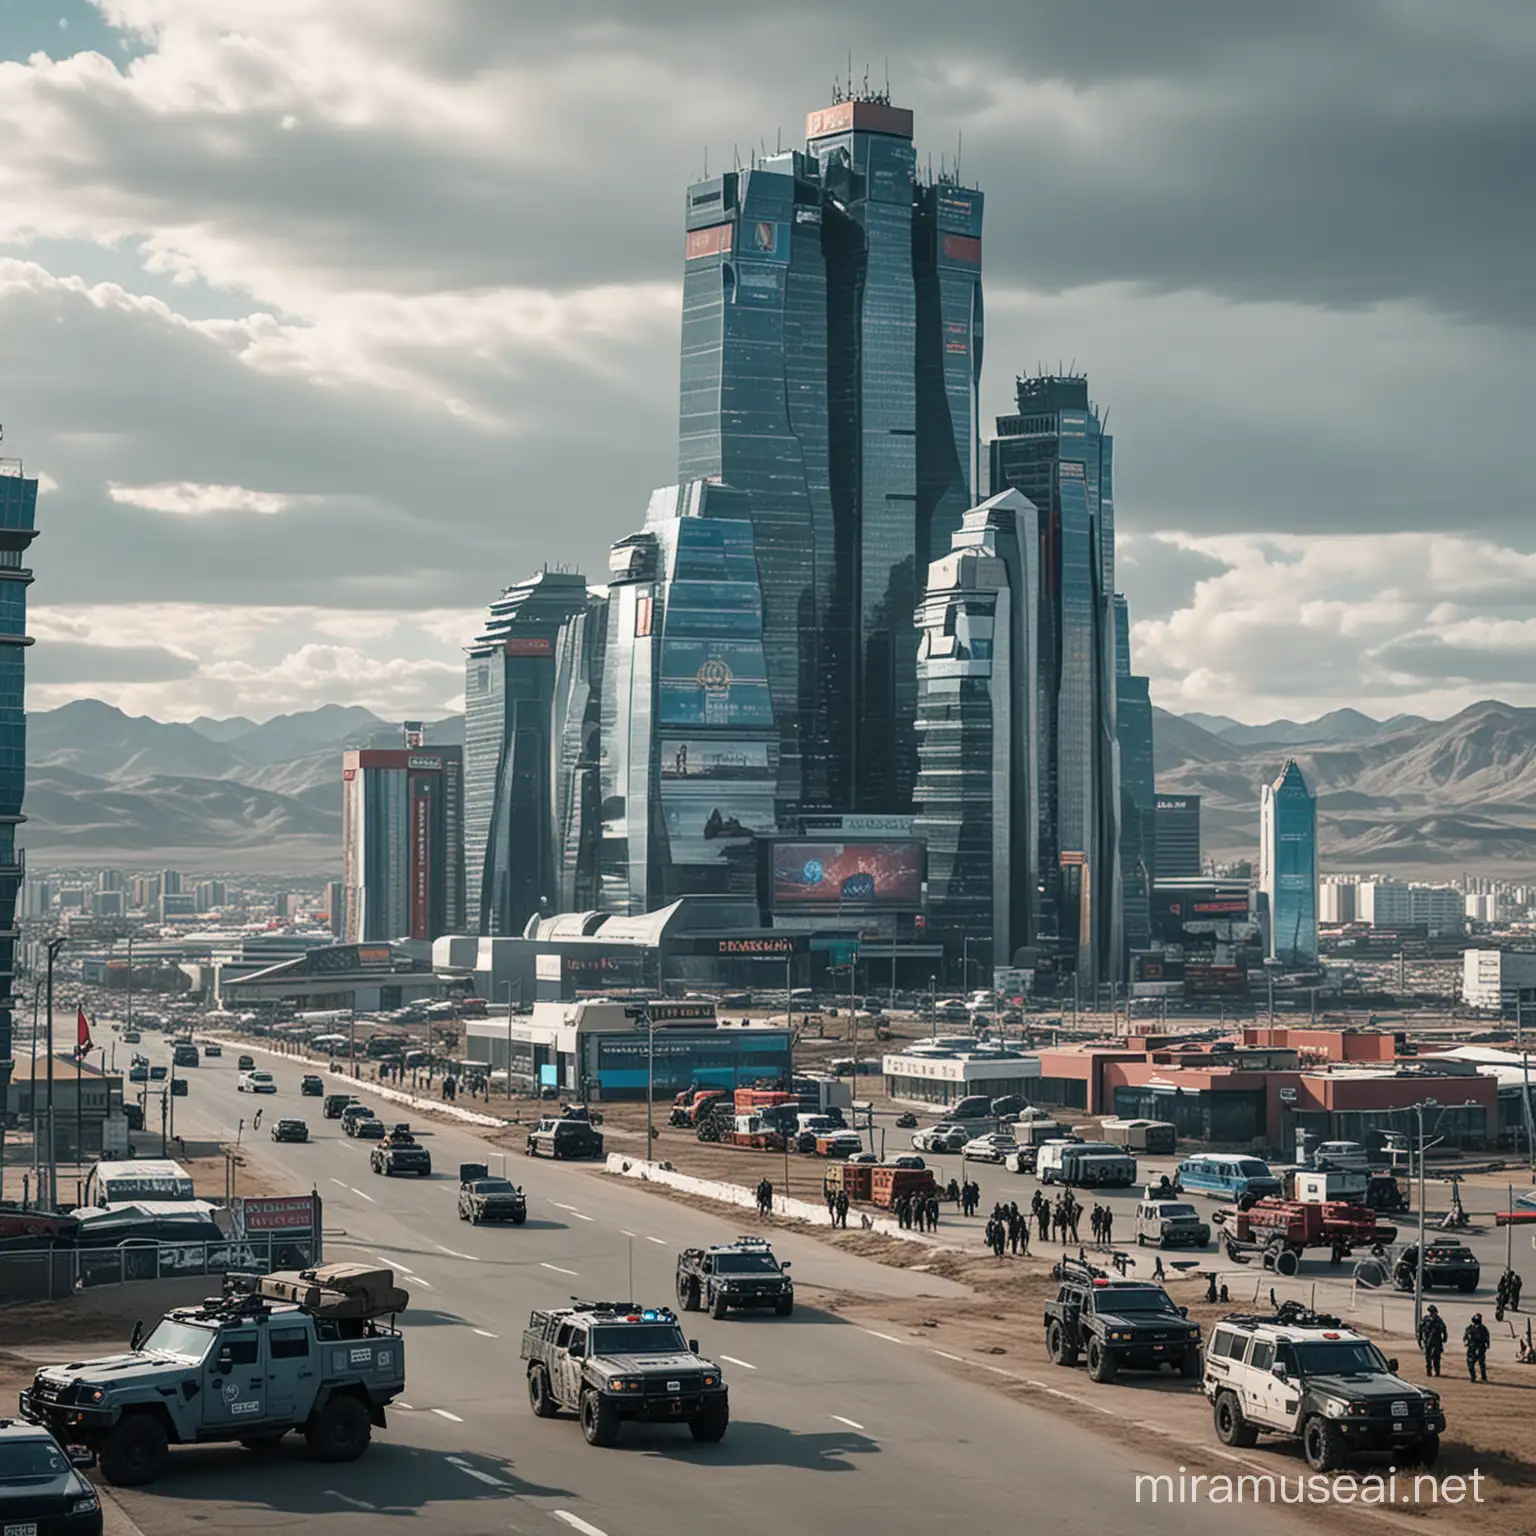 Futuristic Cybersecurity Skyscraper in Dystopian Ulaanbaatar